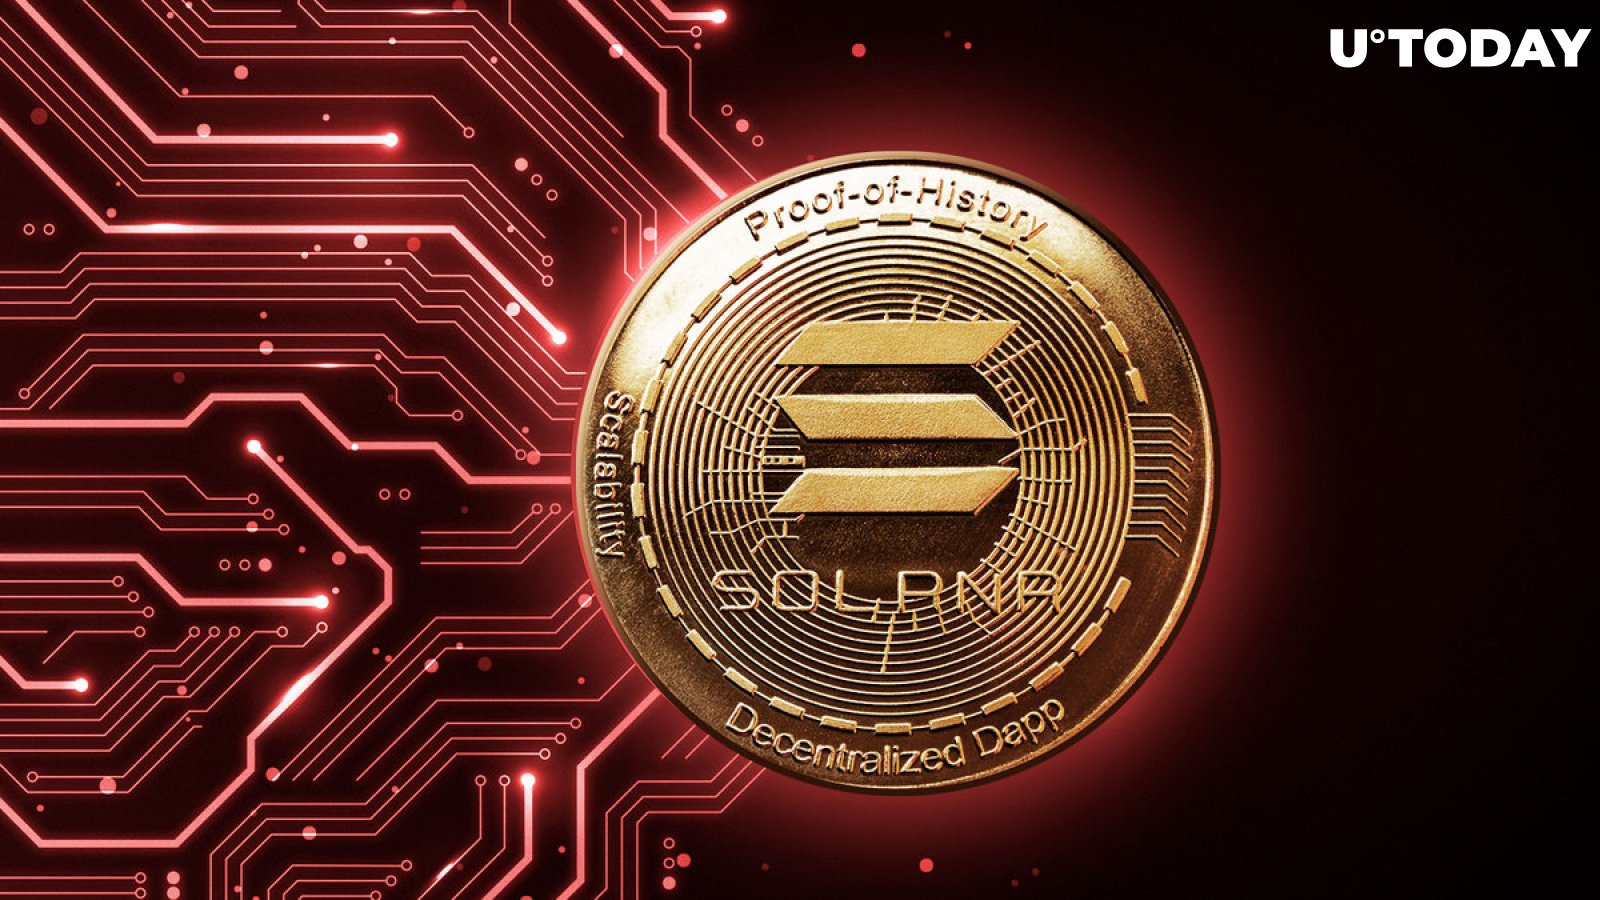 This Solana (SOL) Meme Coin Destroys Wallets: Details